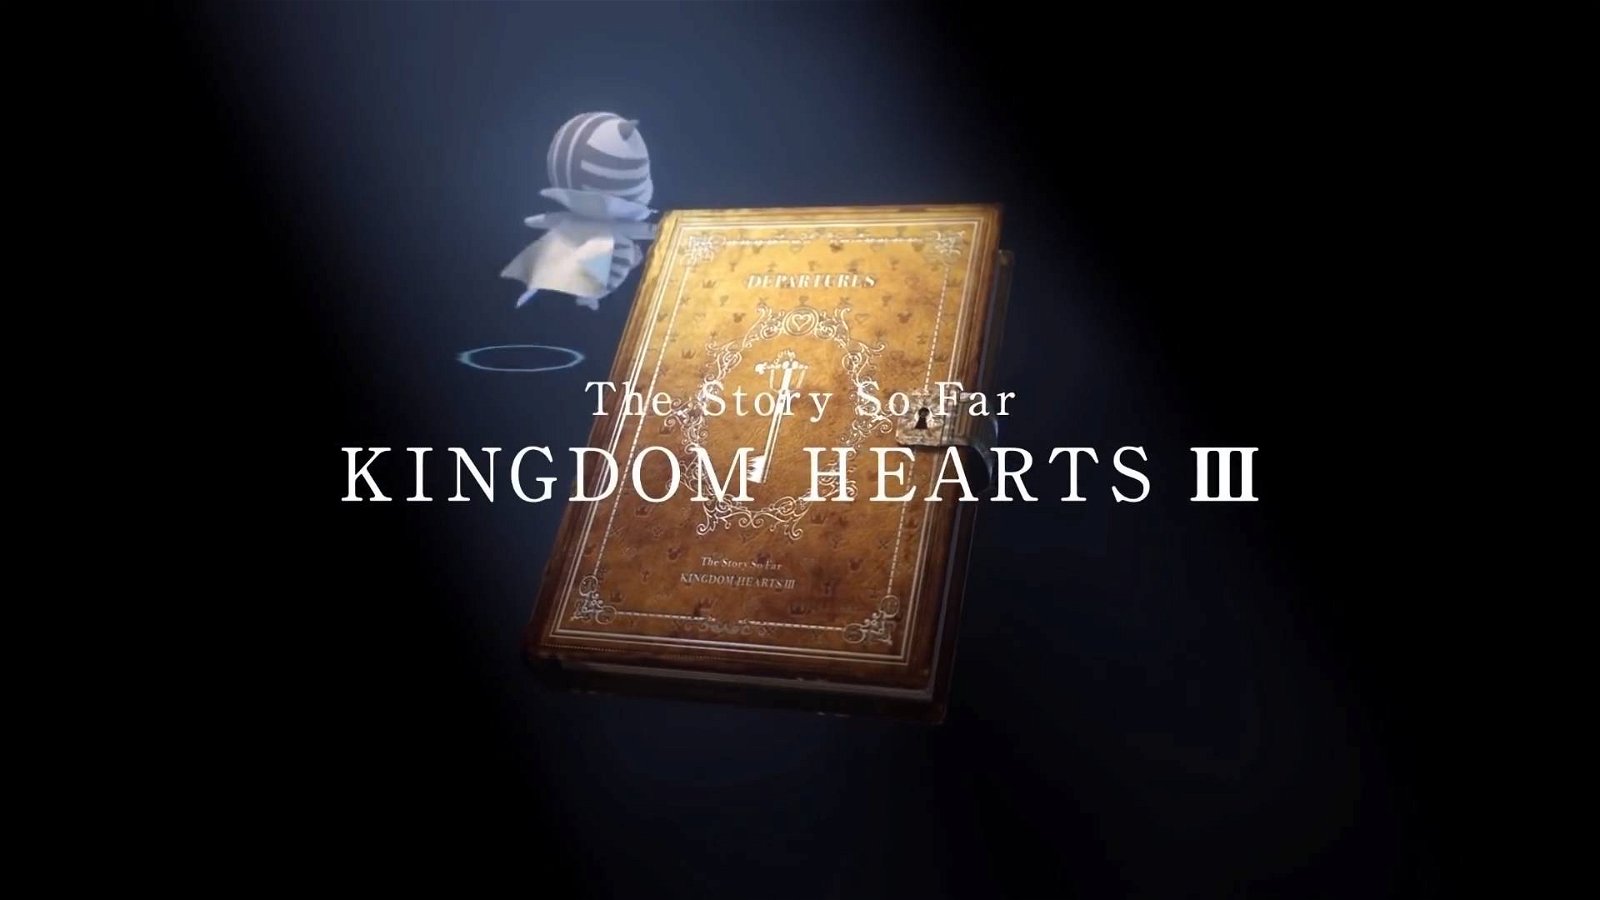 Immagine di Kingdom Hearts III: Square Enix pubblica cinque video riassuntivi per prepararsi all'ultimo capitolo